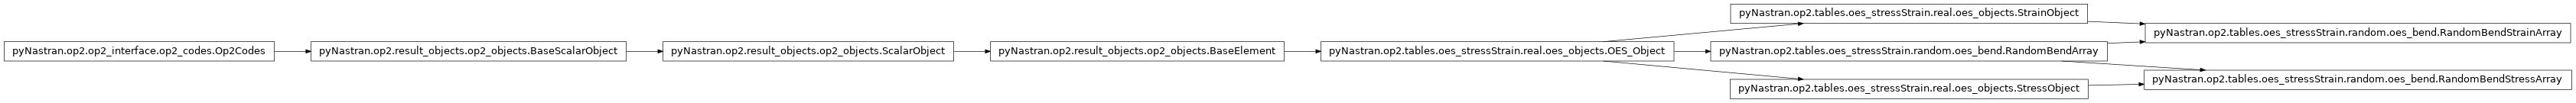 Inheritance diagram of pyNastran.op2.tables.oes_stressStrain.random.oes_bend